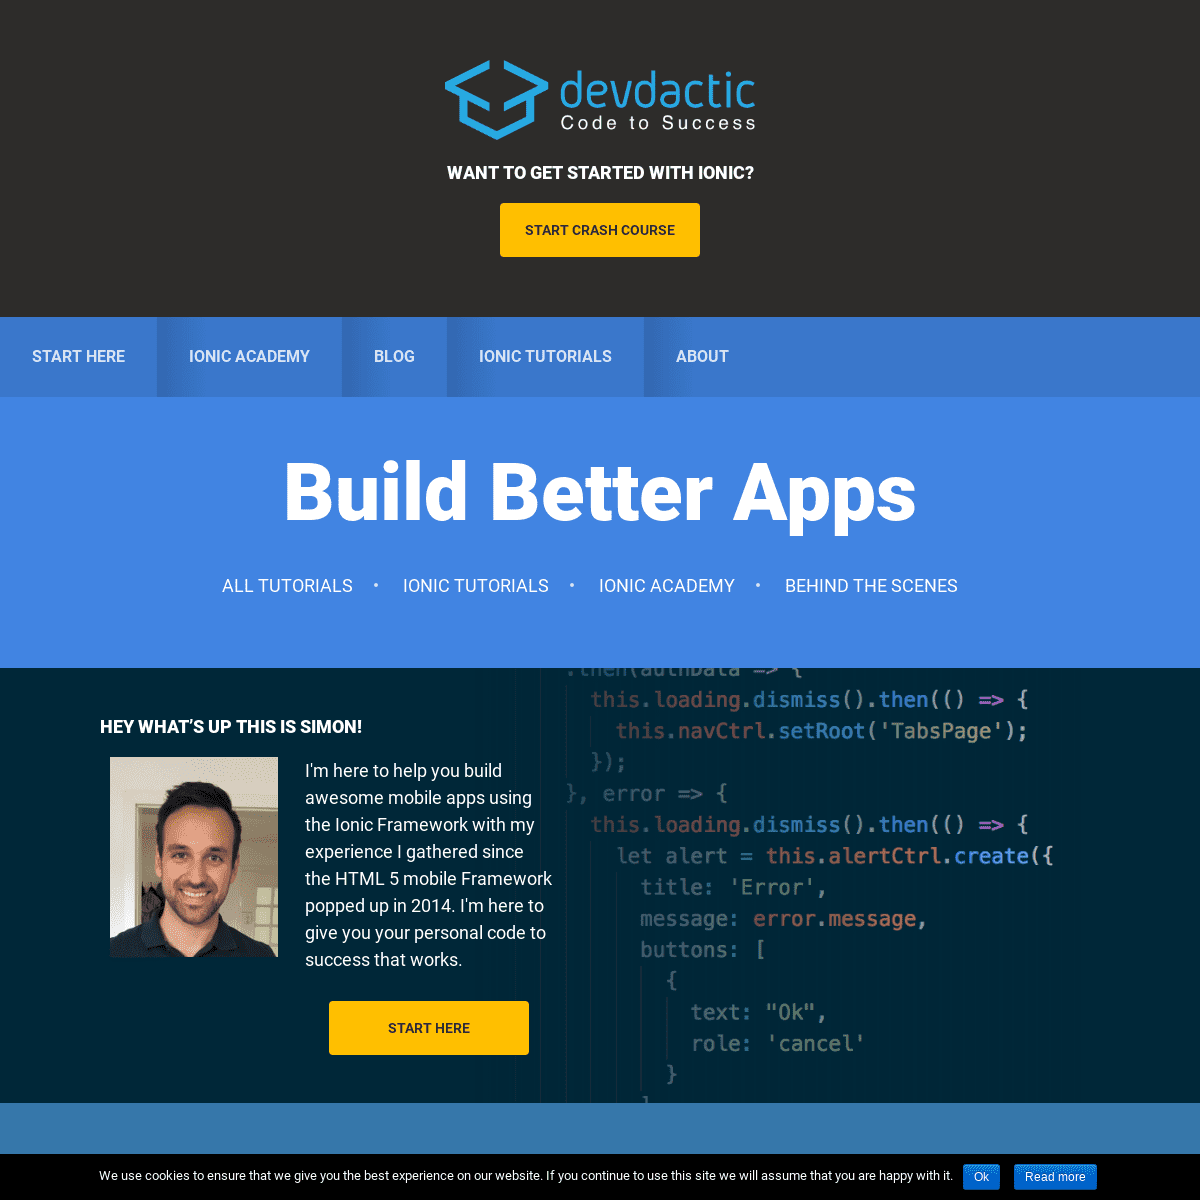 Build Better Apps - Devdactic